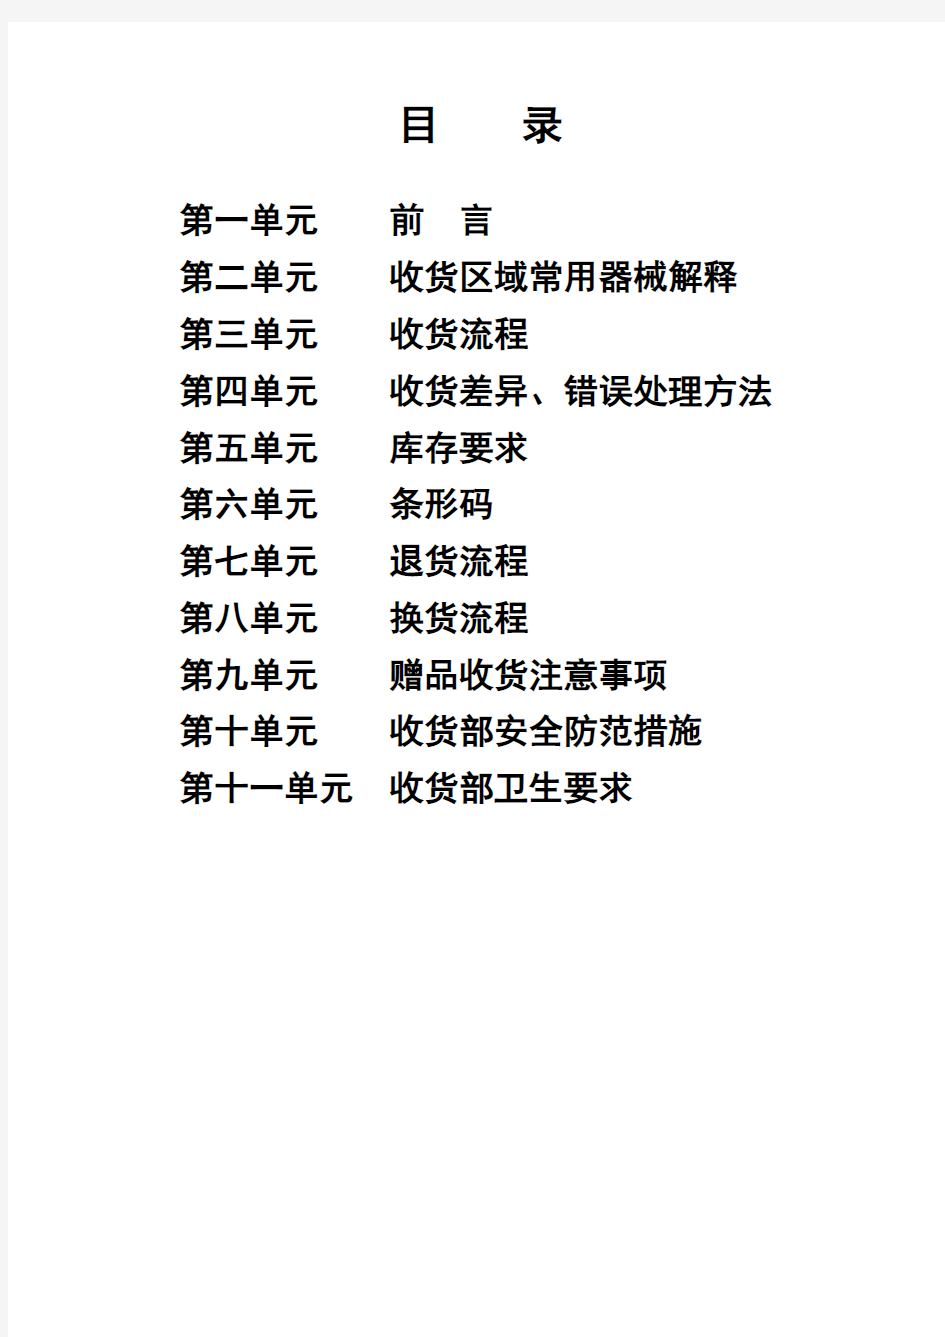 北京华联综合超市收货手册(DOC-44页)资料